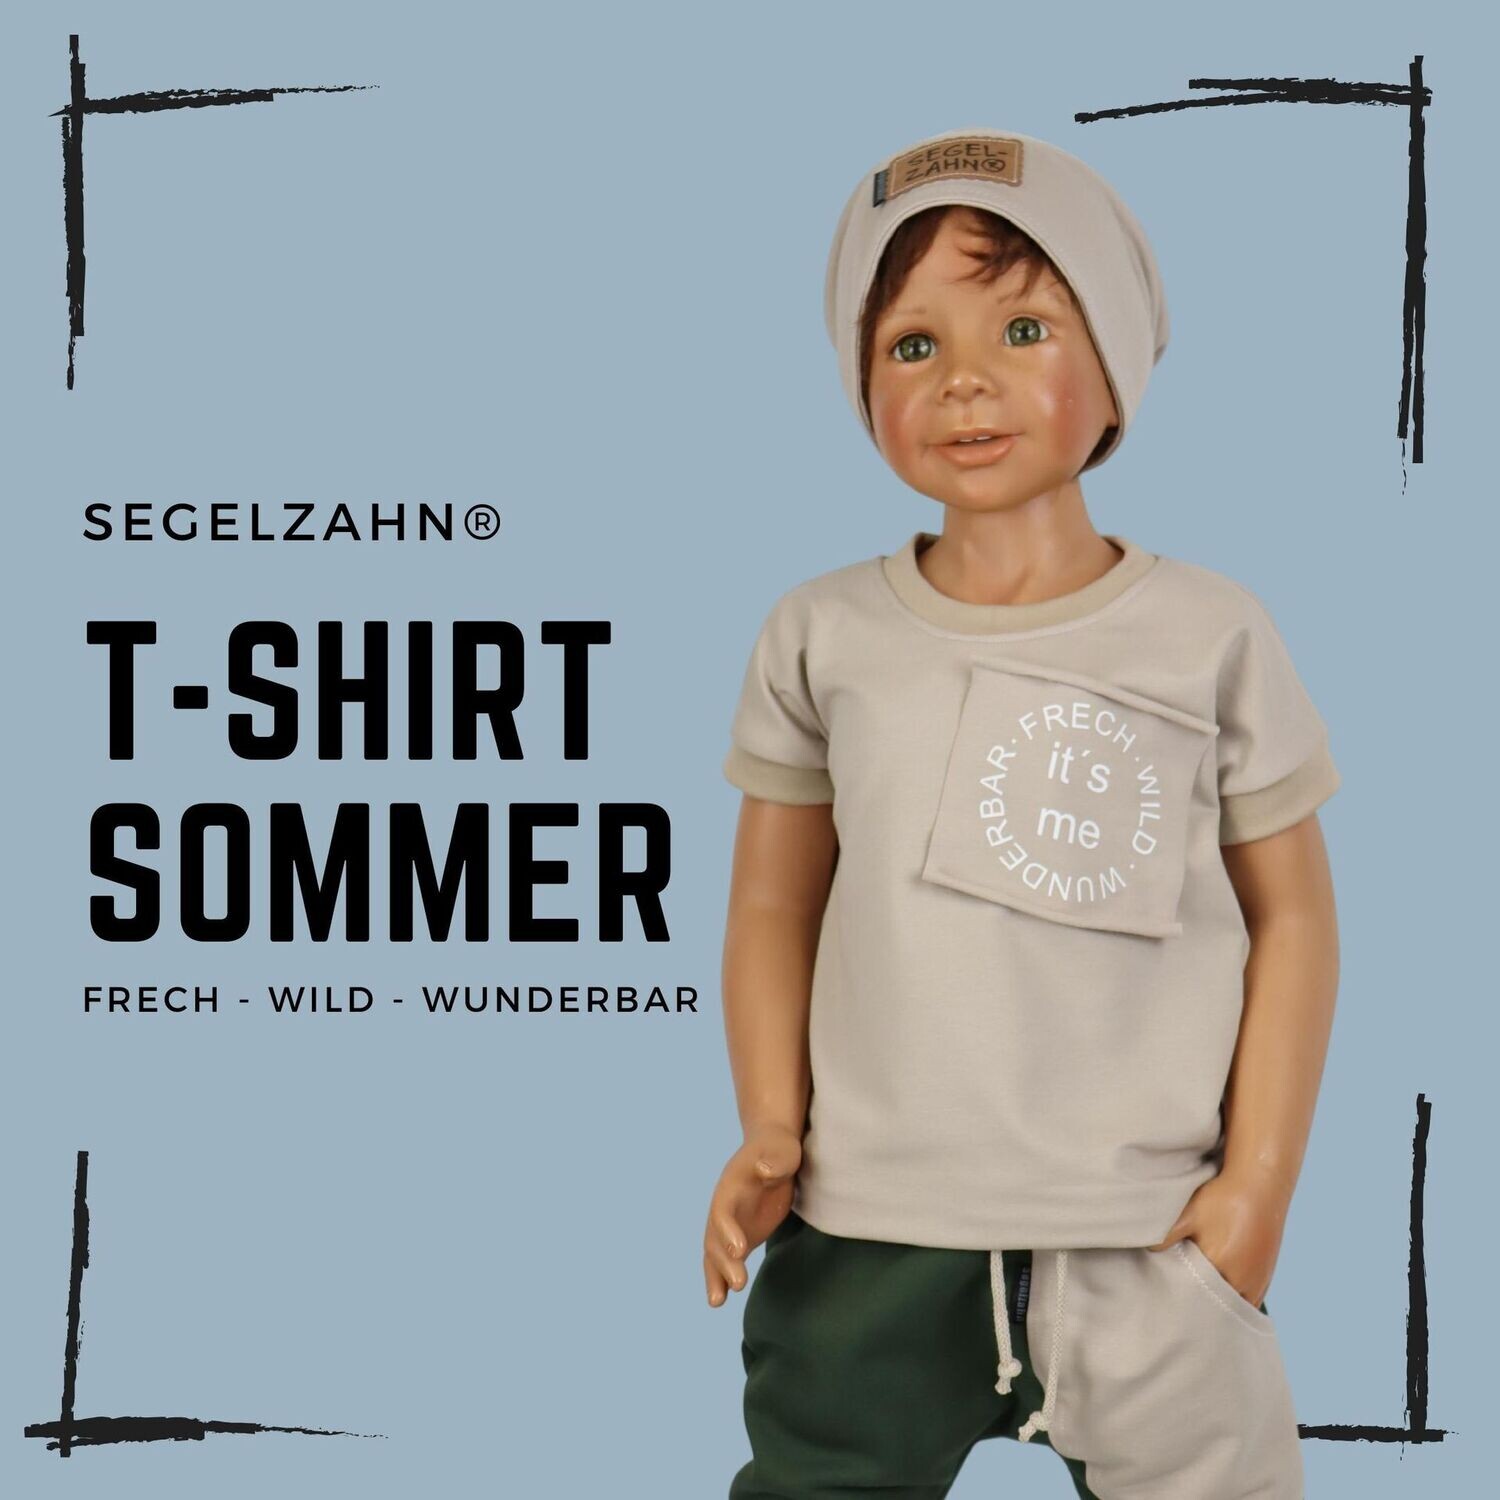 Tshirt Unisex Beige - frech wild wunderbar - ich - statement Shirt für Jungen und Mädchen - Segelzahn - Kindershirt - Oberteile - Sommer für Kind und Baby